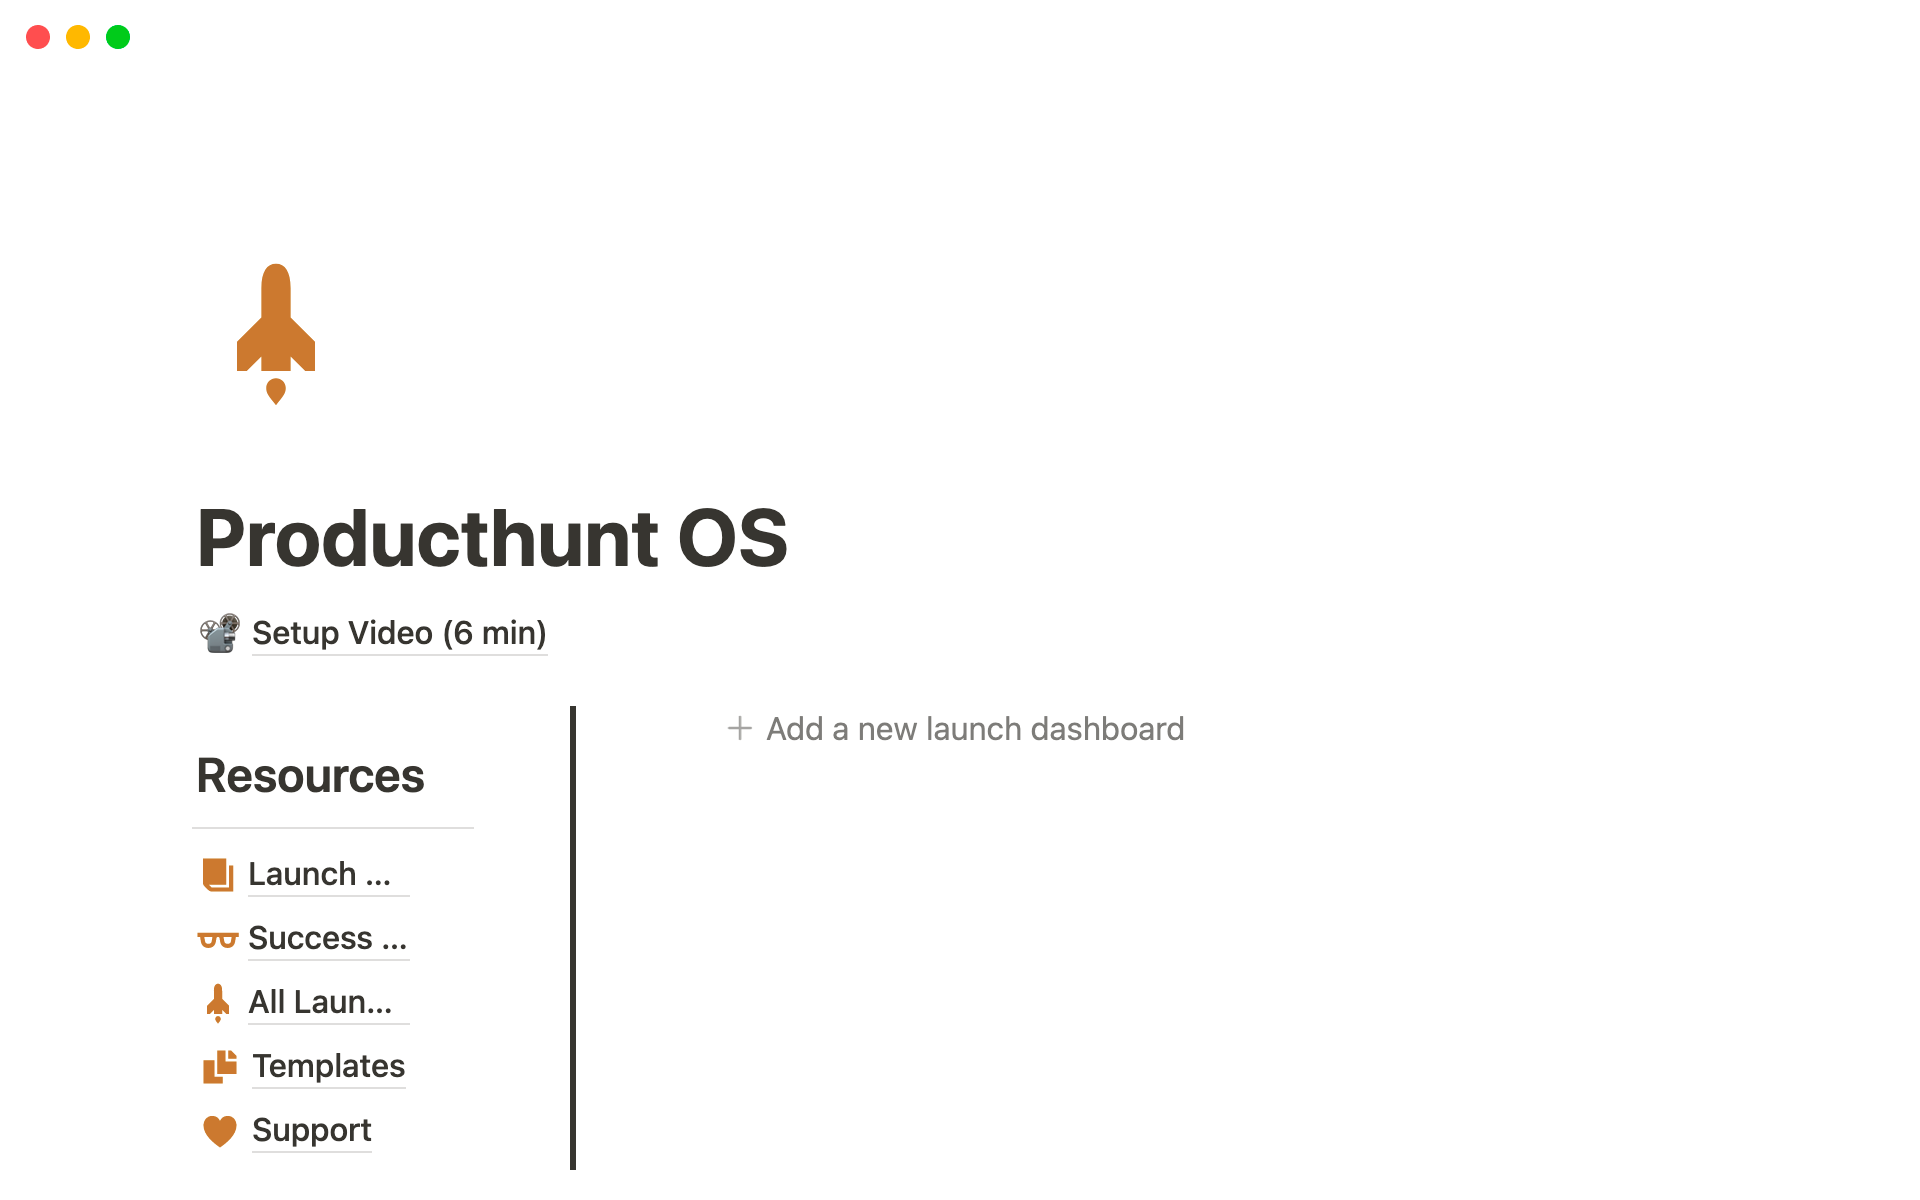 Vista previa de una plantilla para Producthunt OS